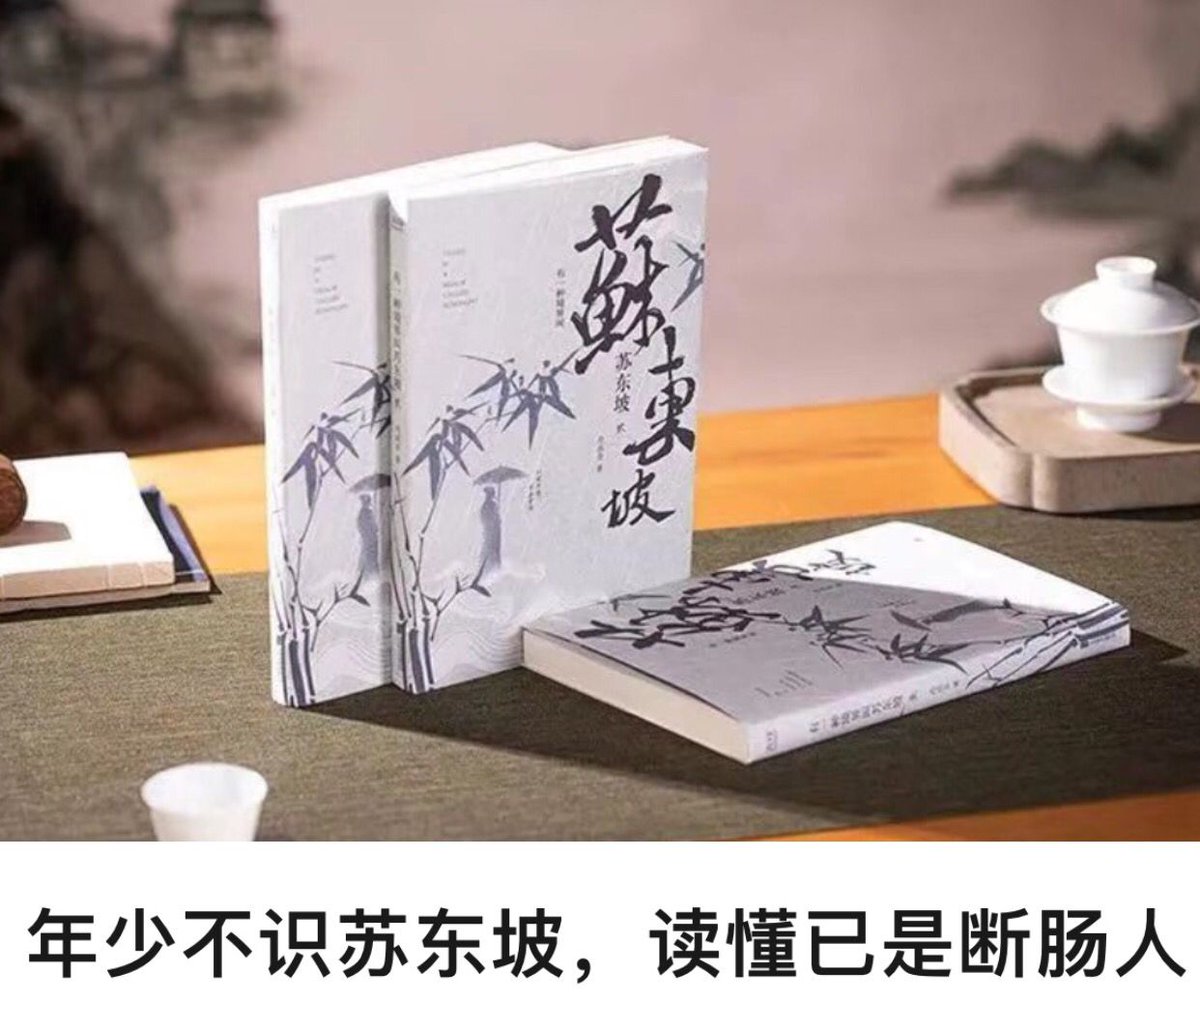 A book: 苏东坡（sū dōng pō）